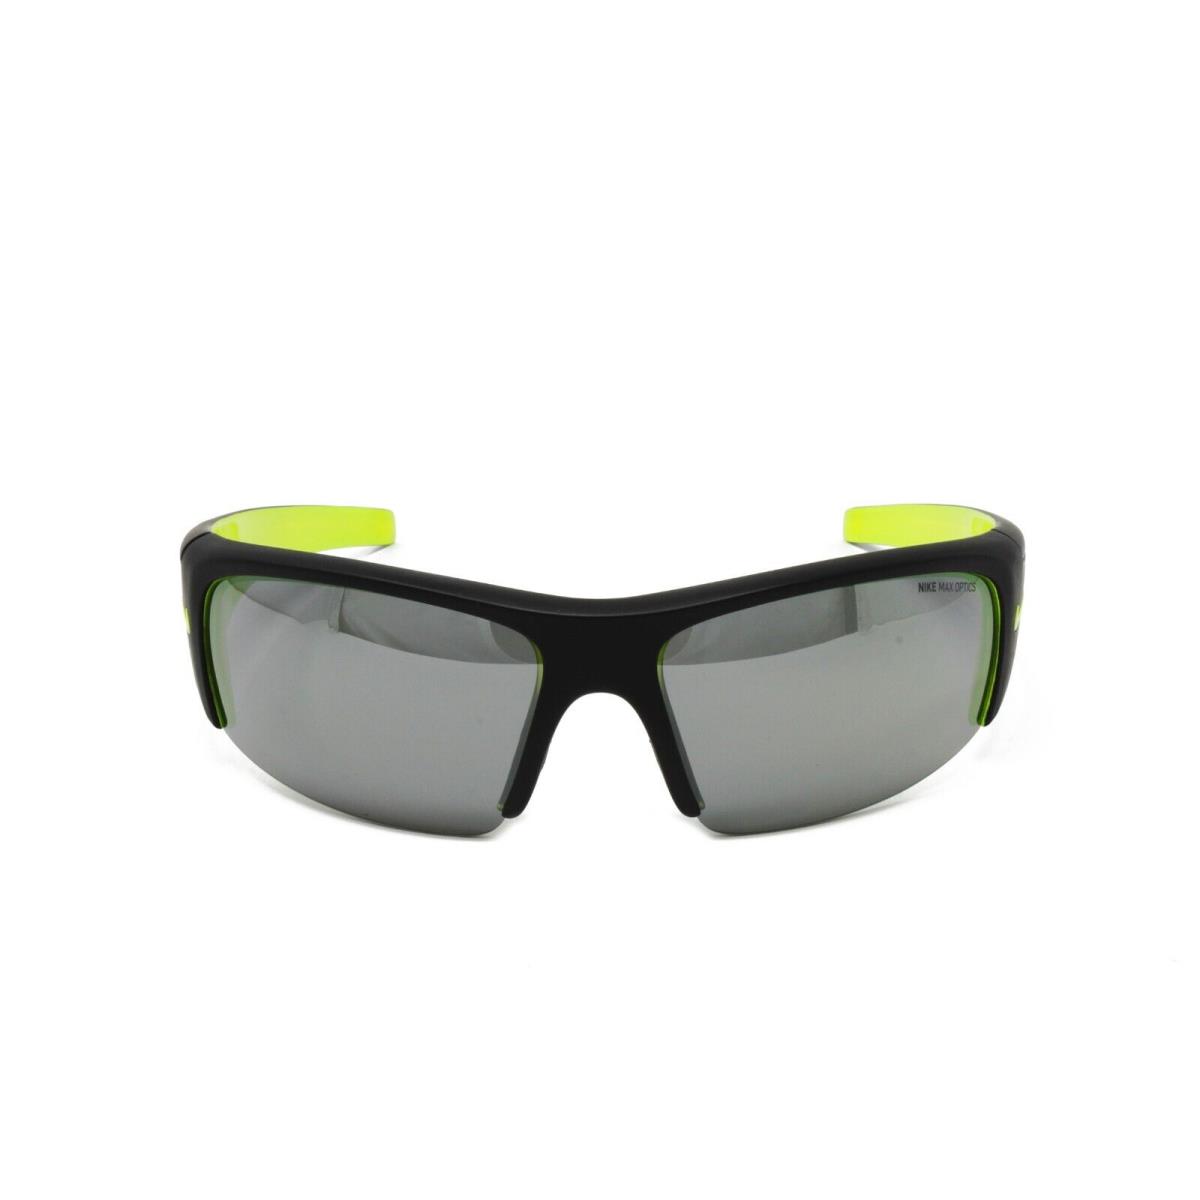 Nike Sunglasses Diverge EV0325 007 Black Volt 64mm Grey Silver Flash Lens